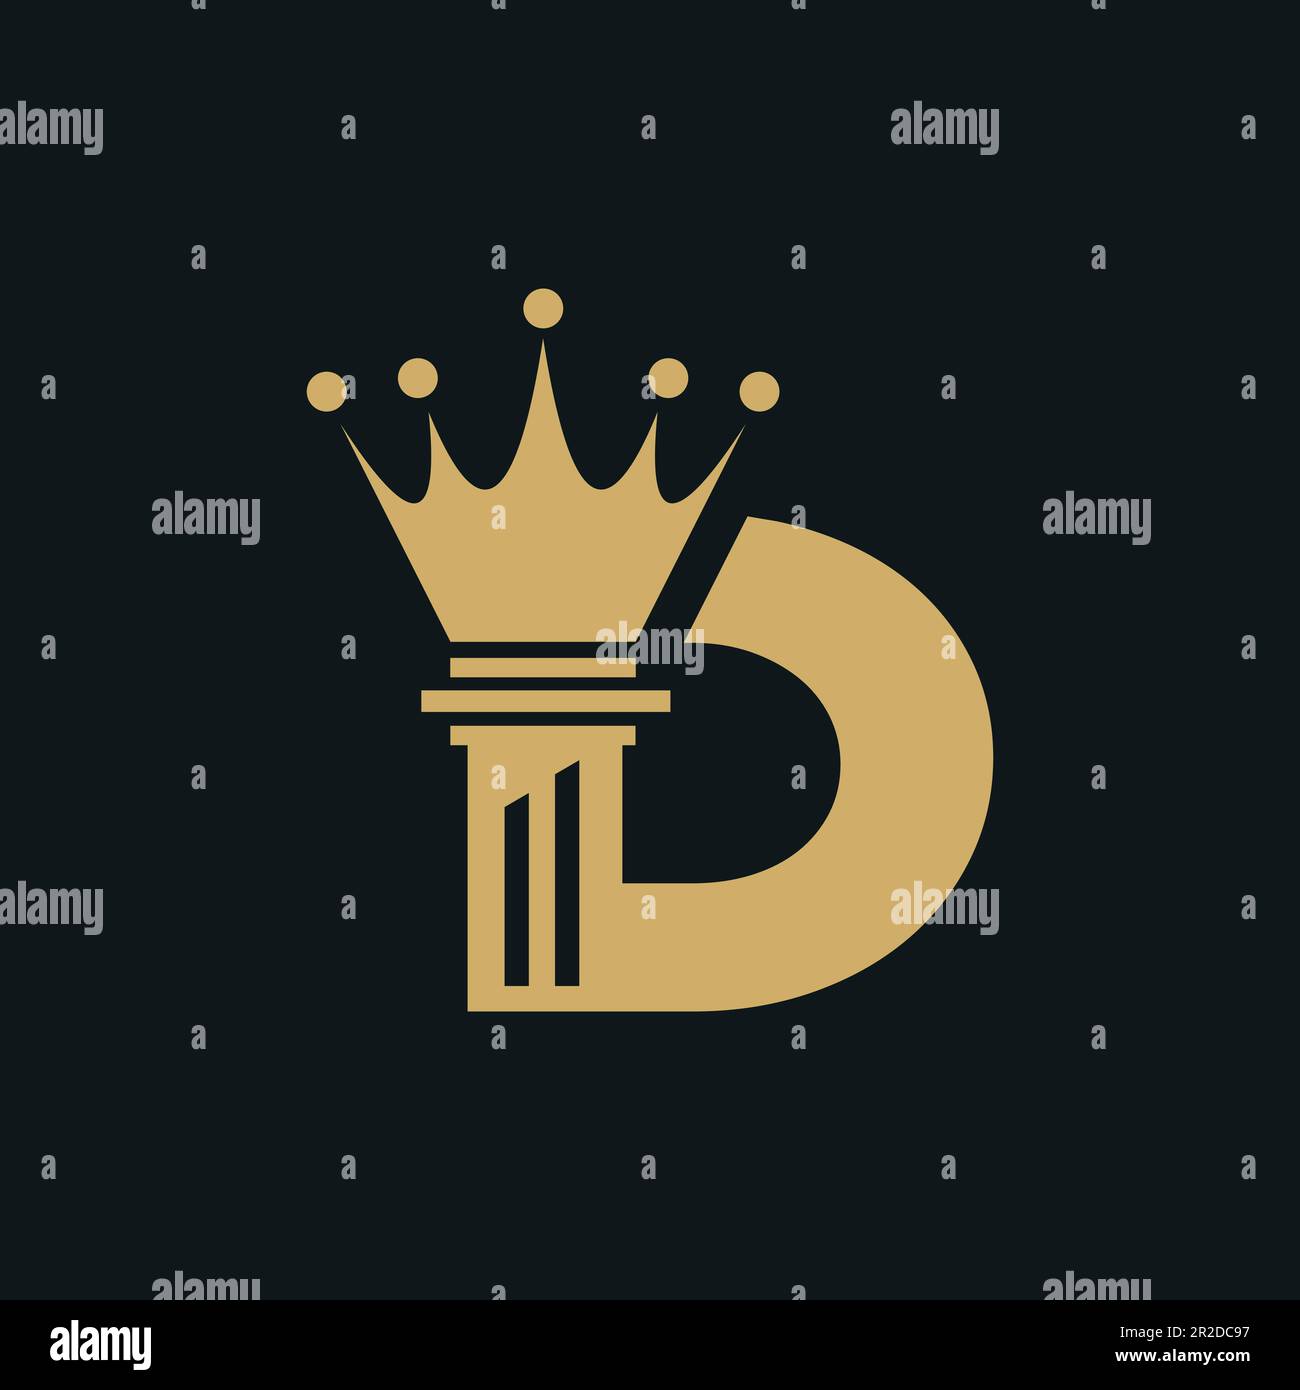 D letter golden King logo design Stock Vector Image & Art - Alamy